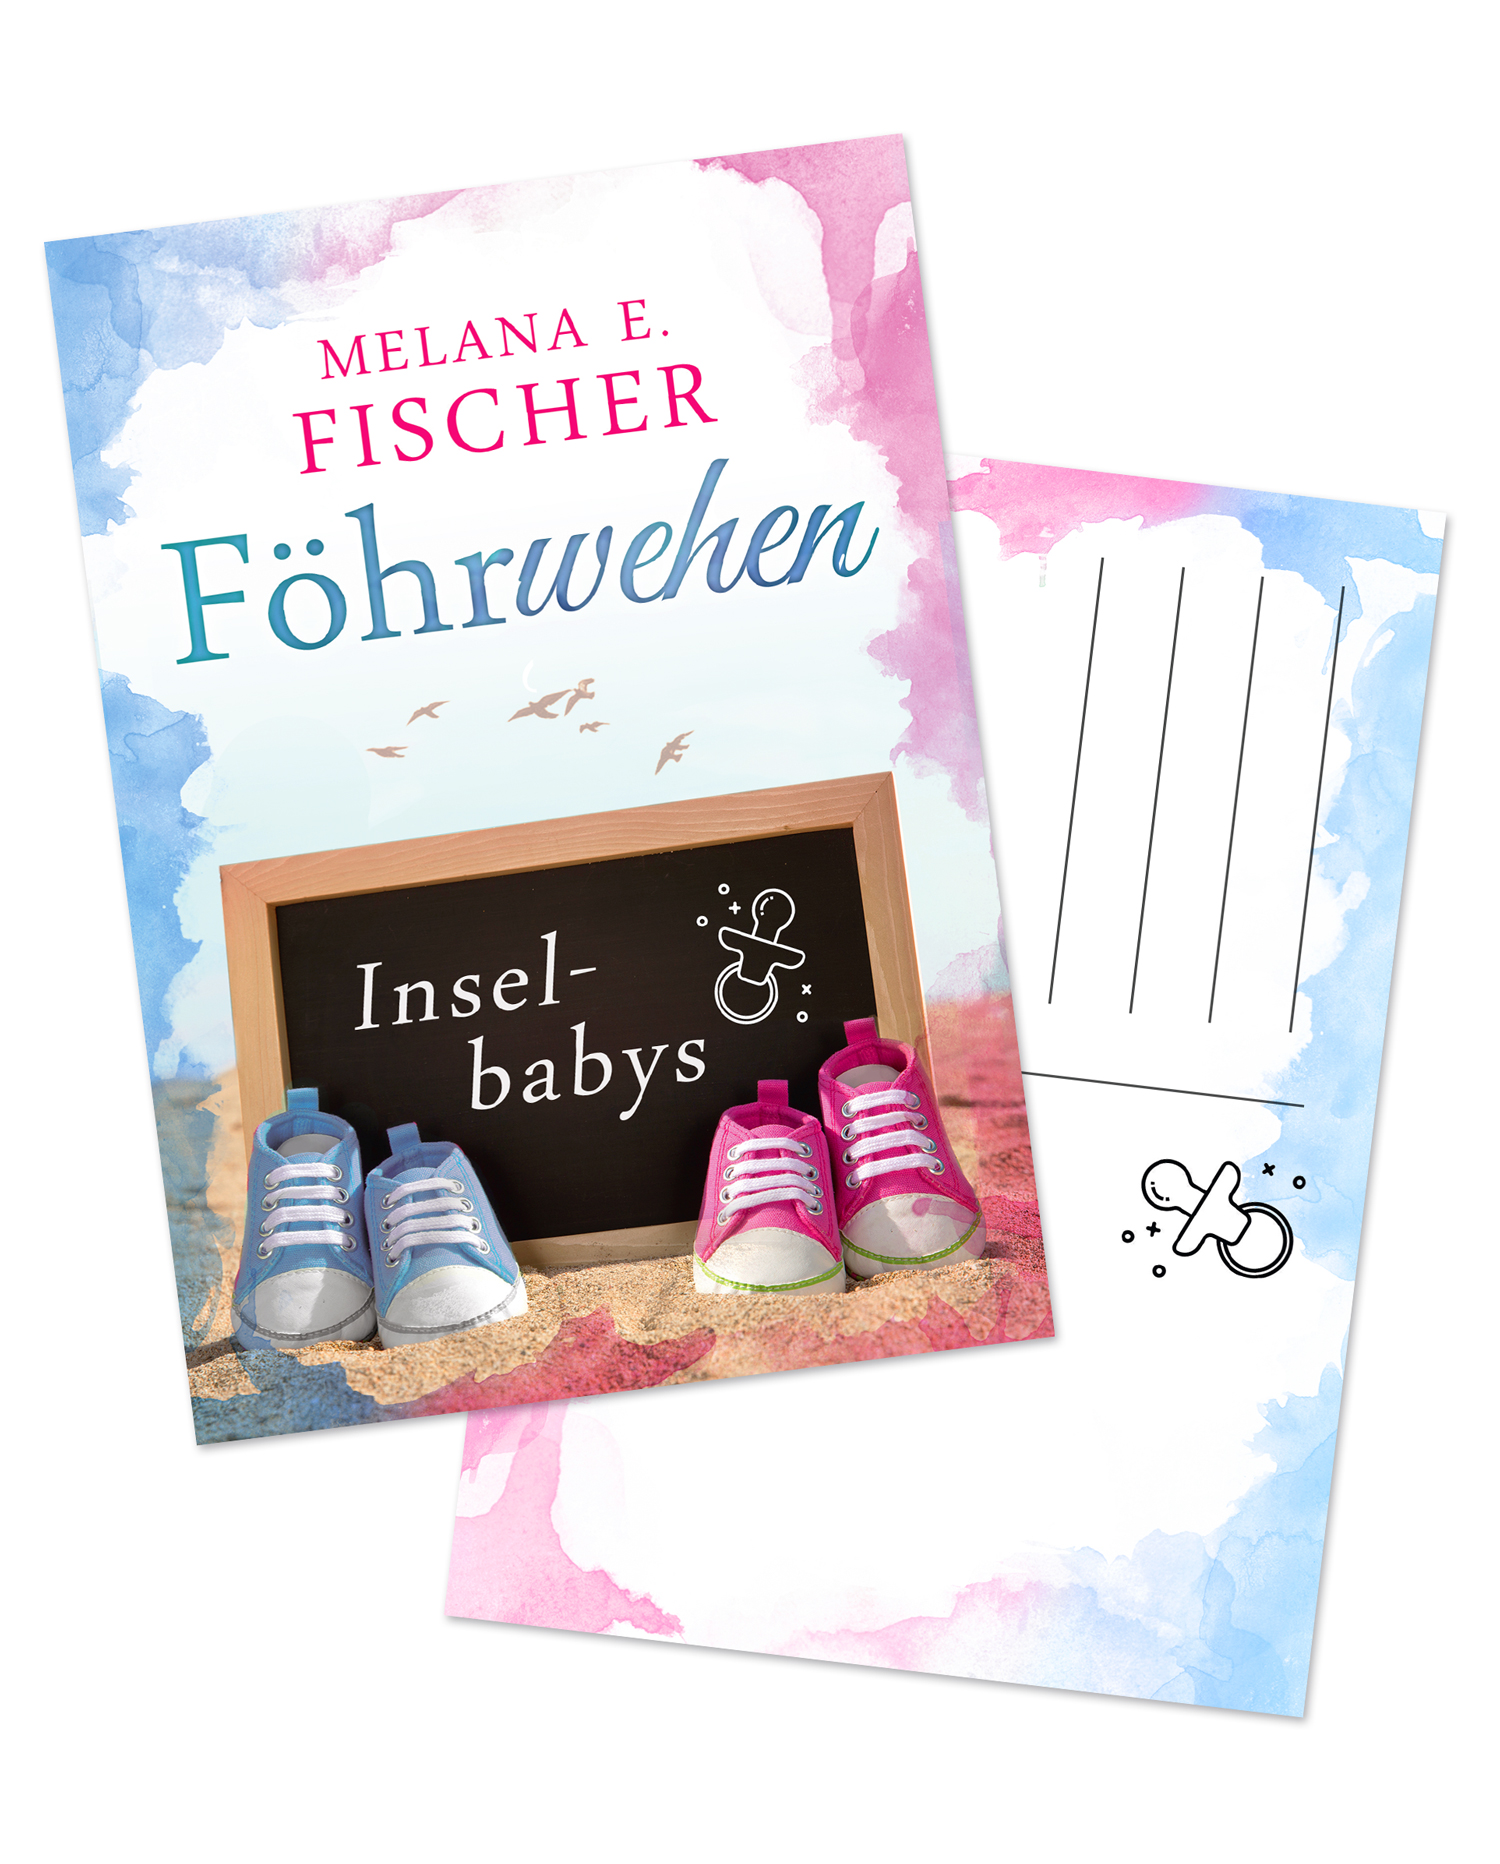 Postkarte Liebesroman Föhrwehen Inselbabys von Melana E. Fischer